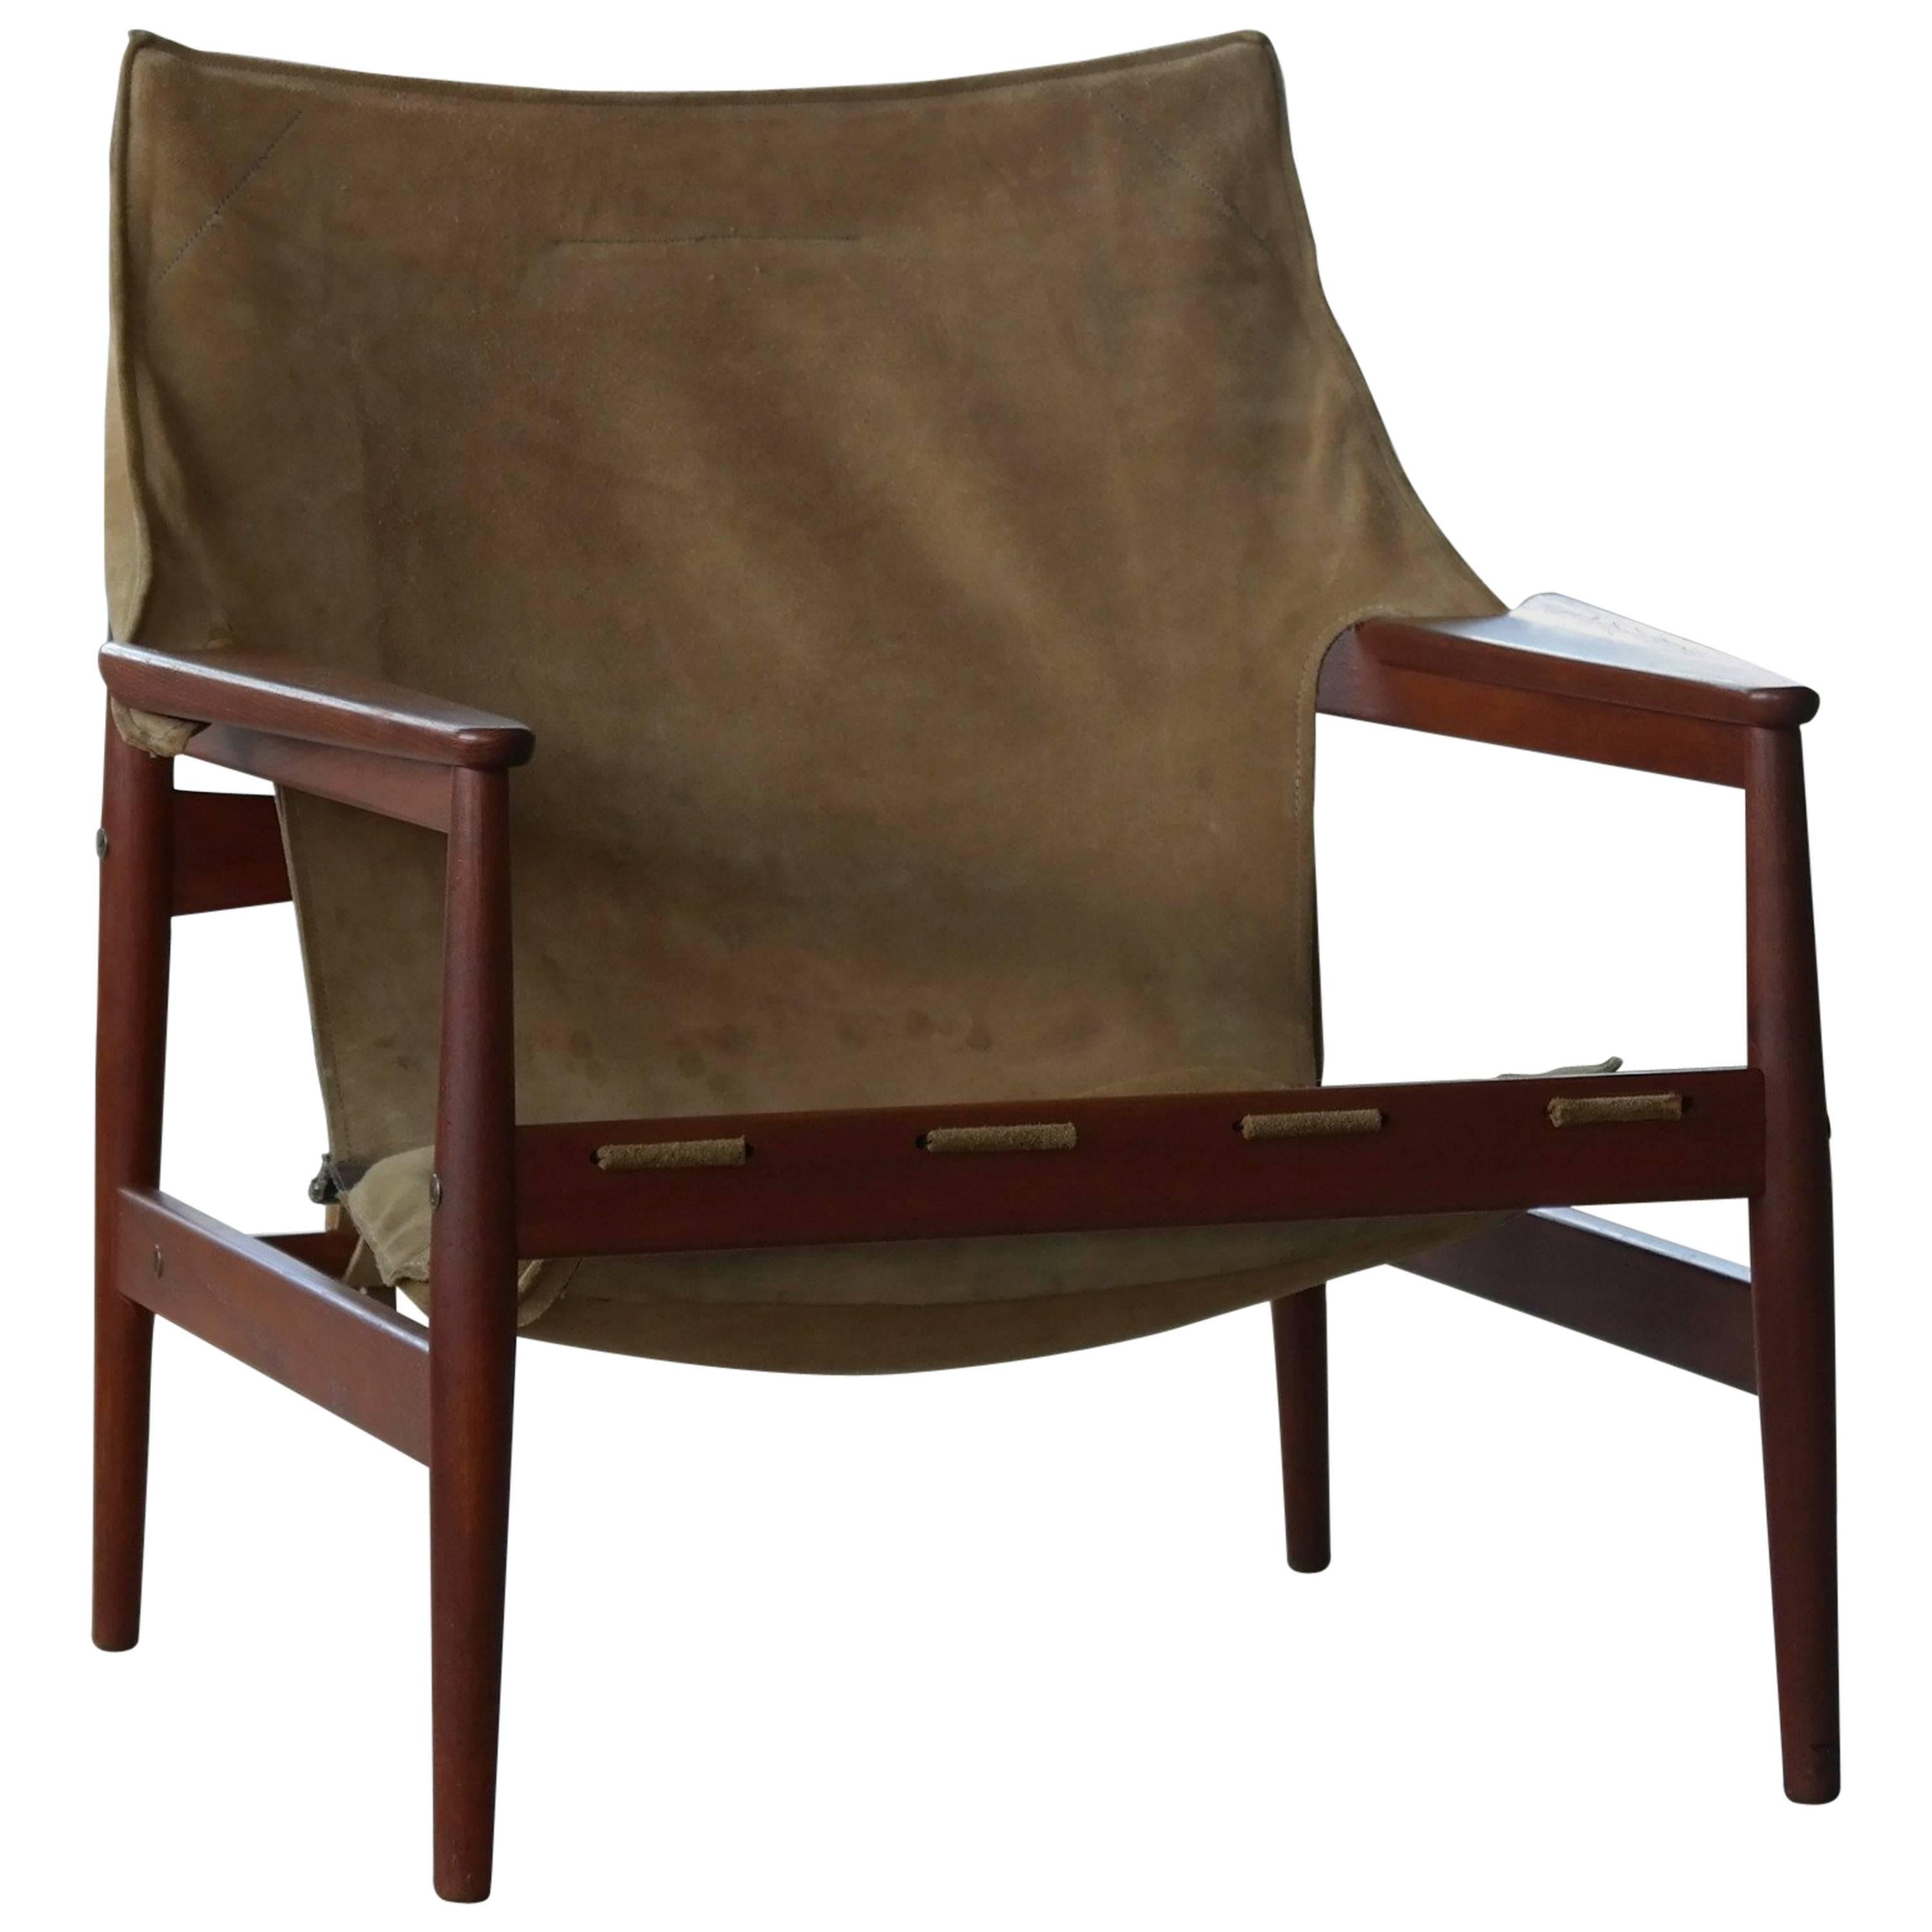 Hans Olsen Safari Sling Chair in Teak and Tan Suede for Viska Mobler, Sweden